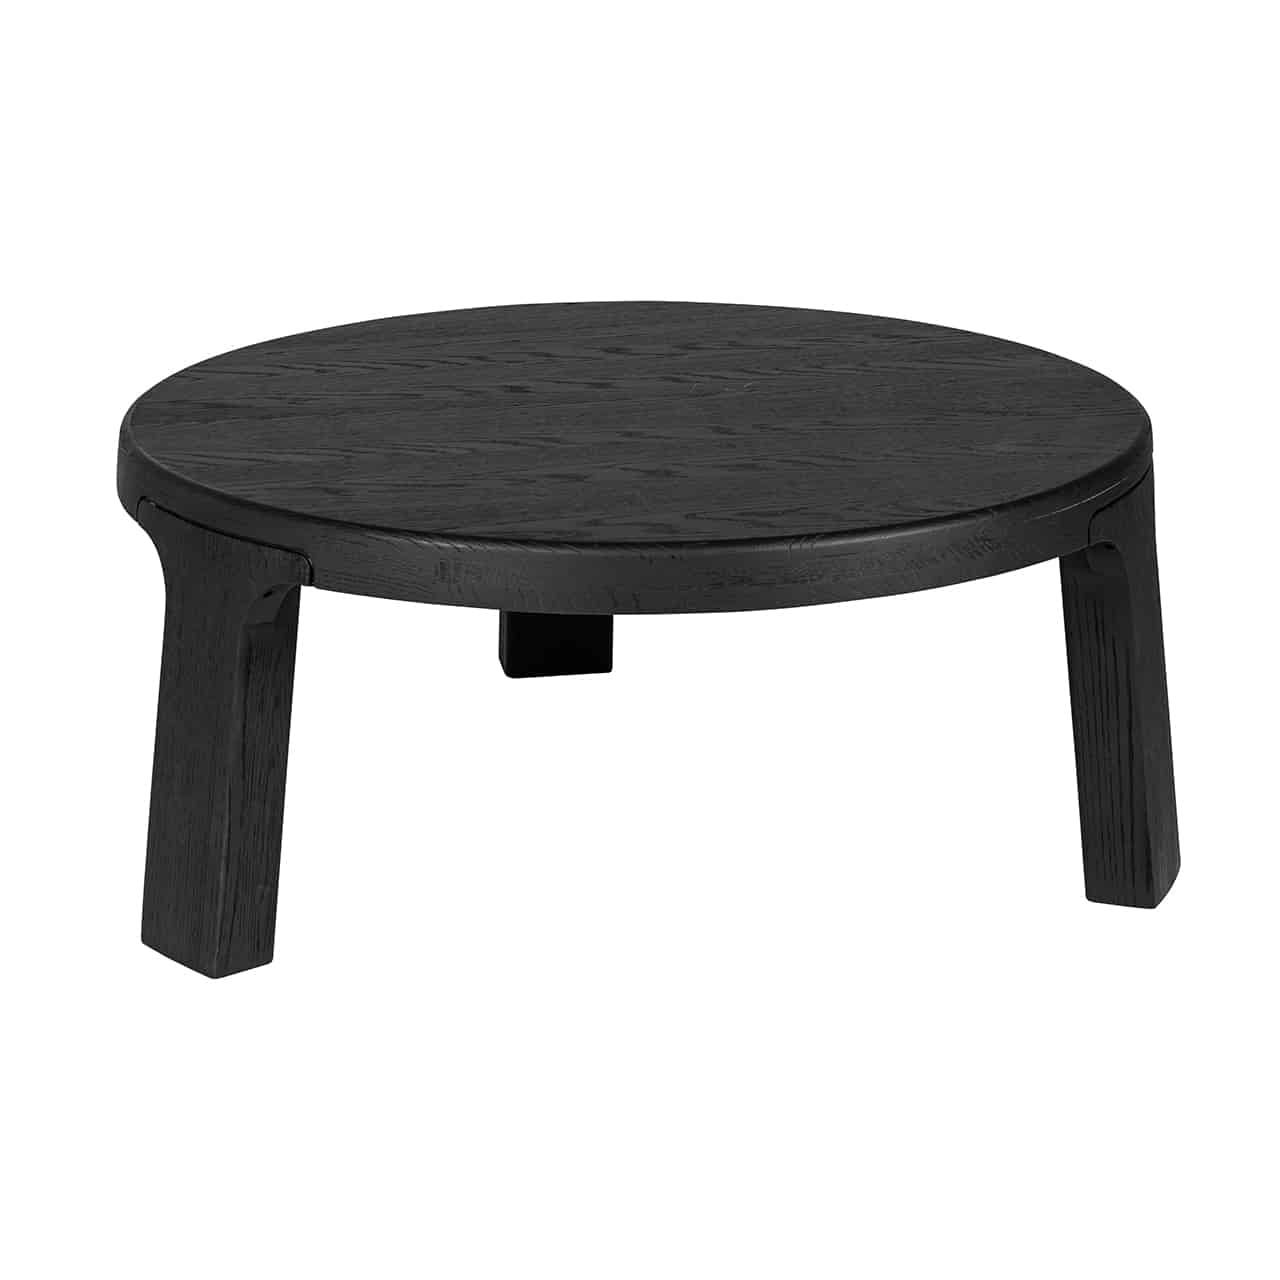 Niedriger runder Couchtisch in schwarz; auf drei rechteckigen  kompakten, leicht nach außen stehenden Beinen eine dicke runde Tischplatte.